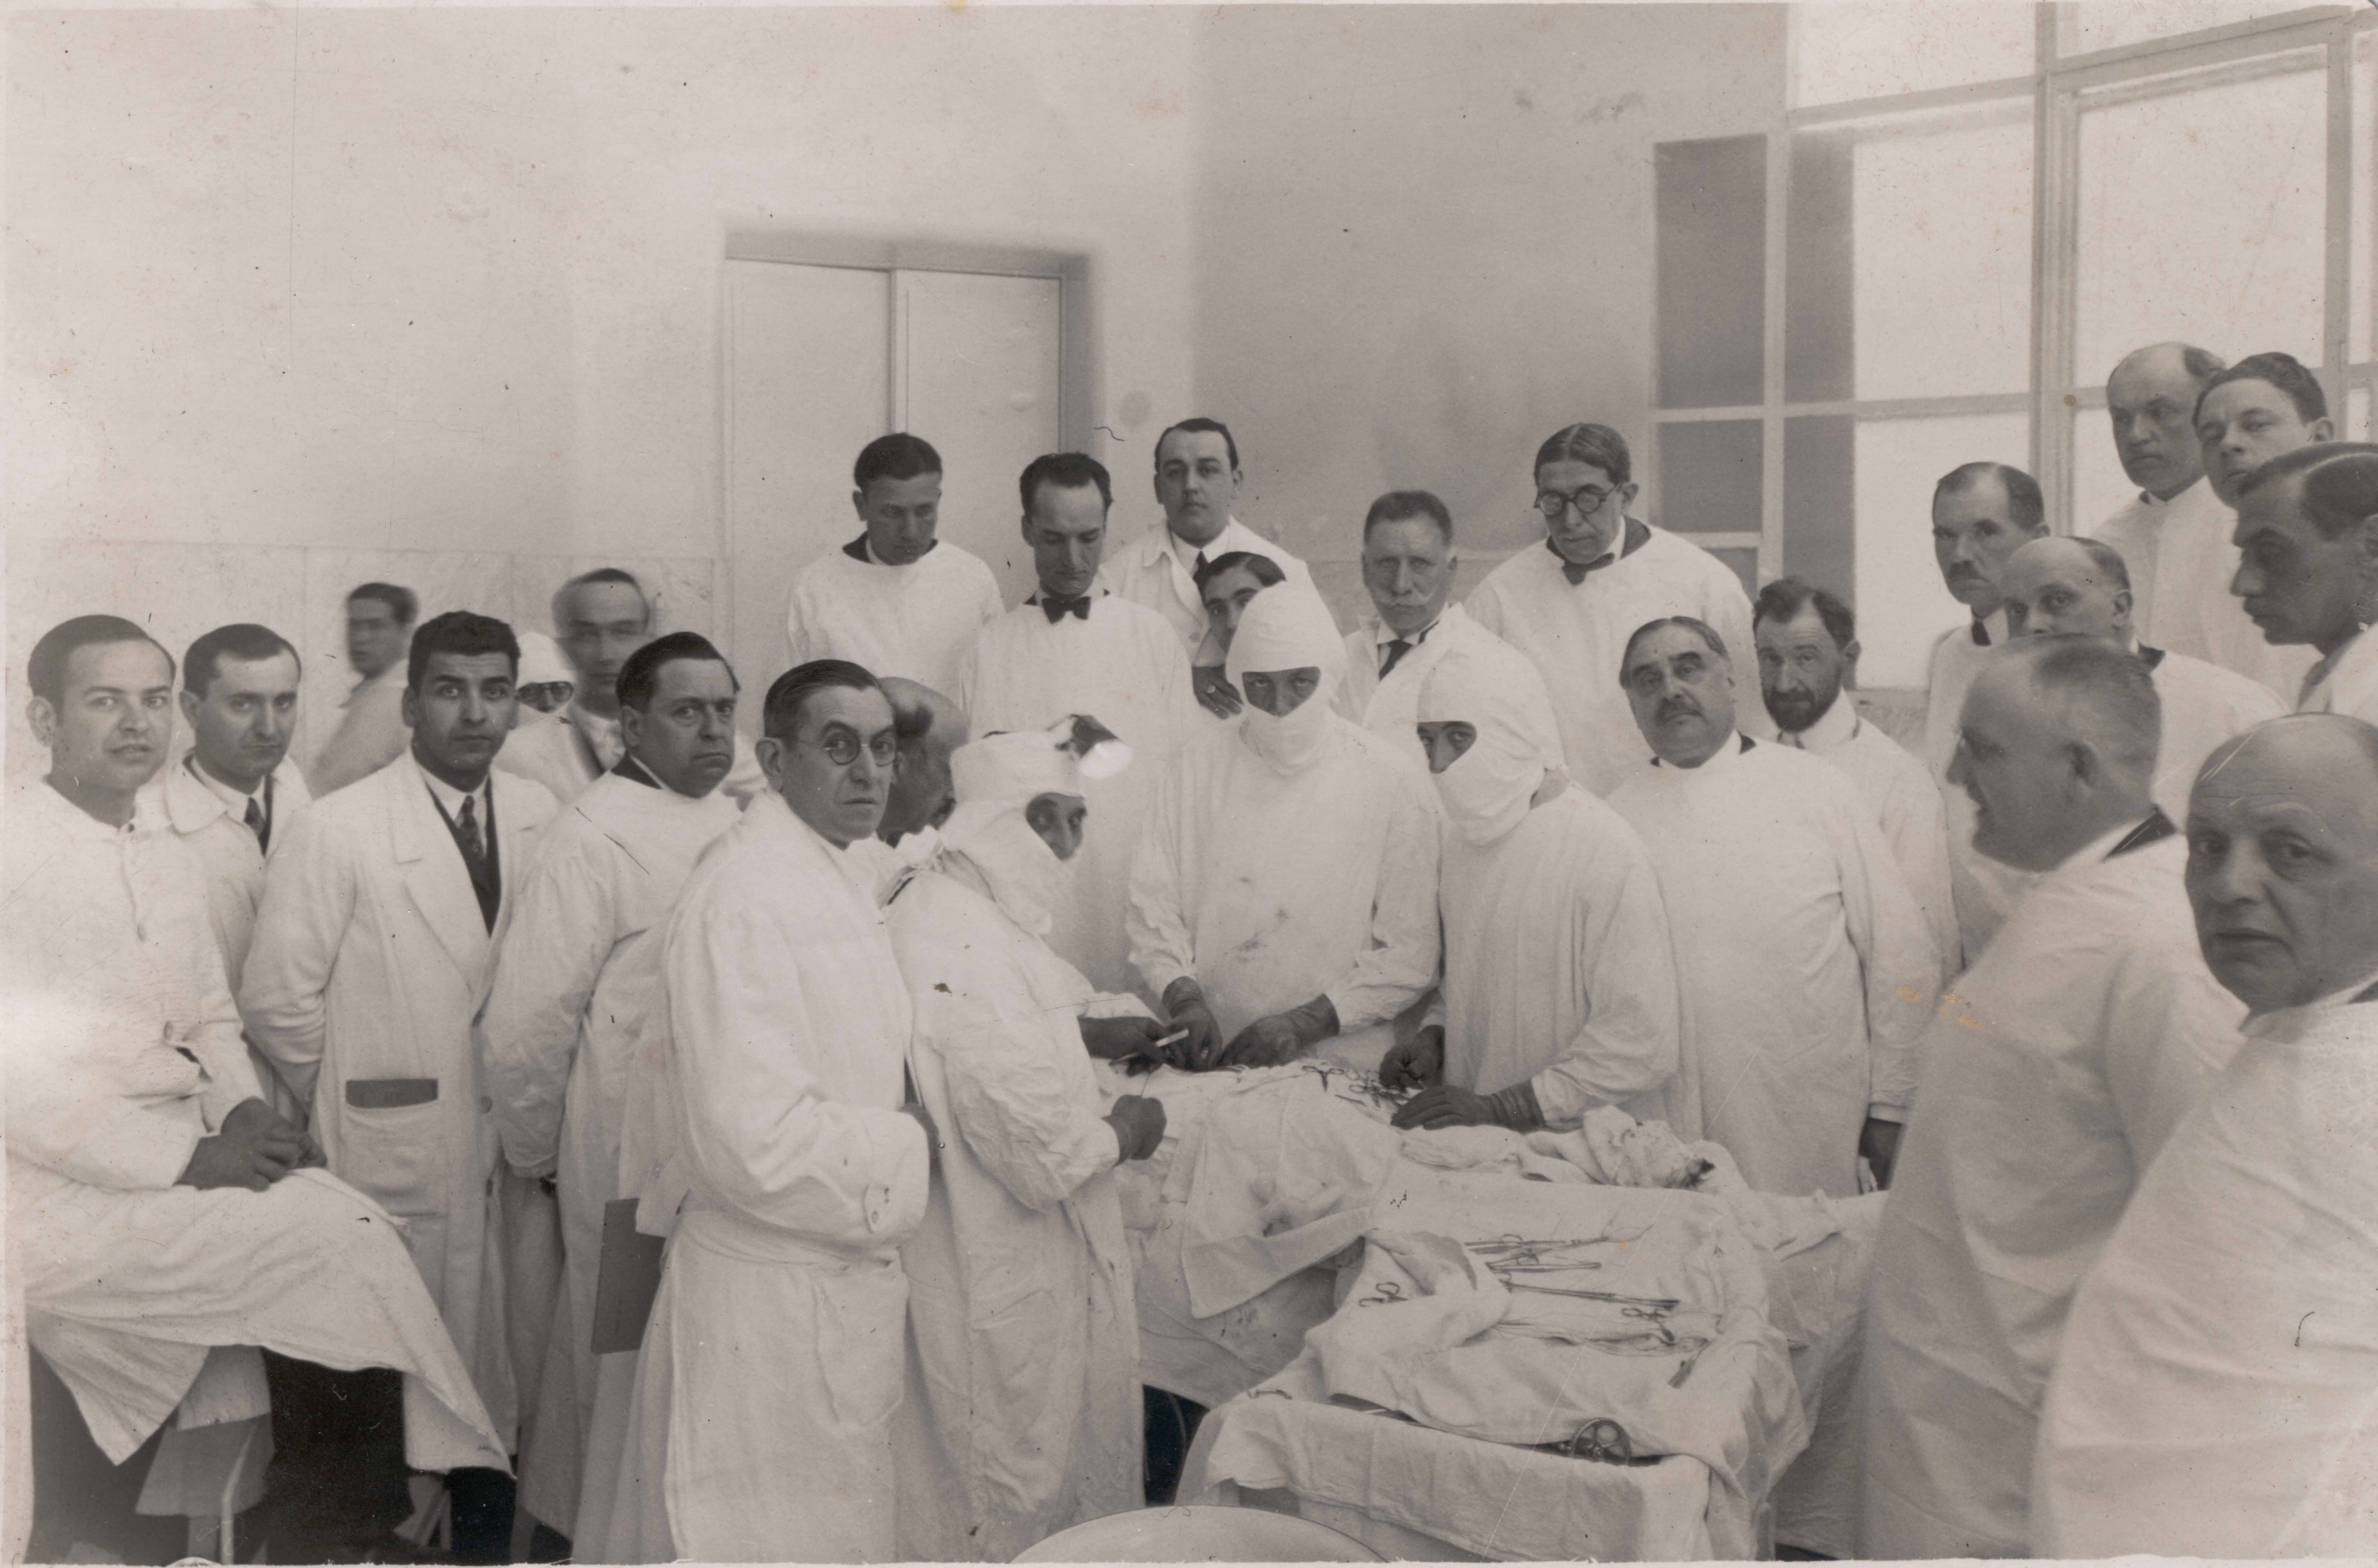 Intervenció quirúrgica dels doctors Manuel Corachan i Josep Trueta, el més probable a l'Hospital de la Santa Creu i Sant Pau, c. 1930.